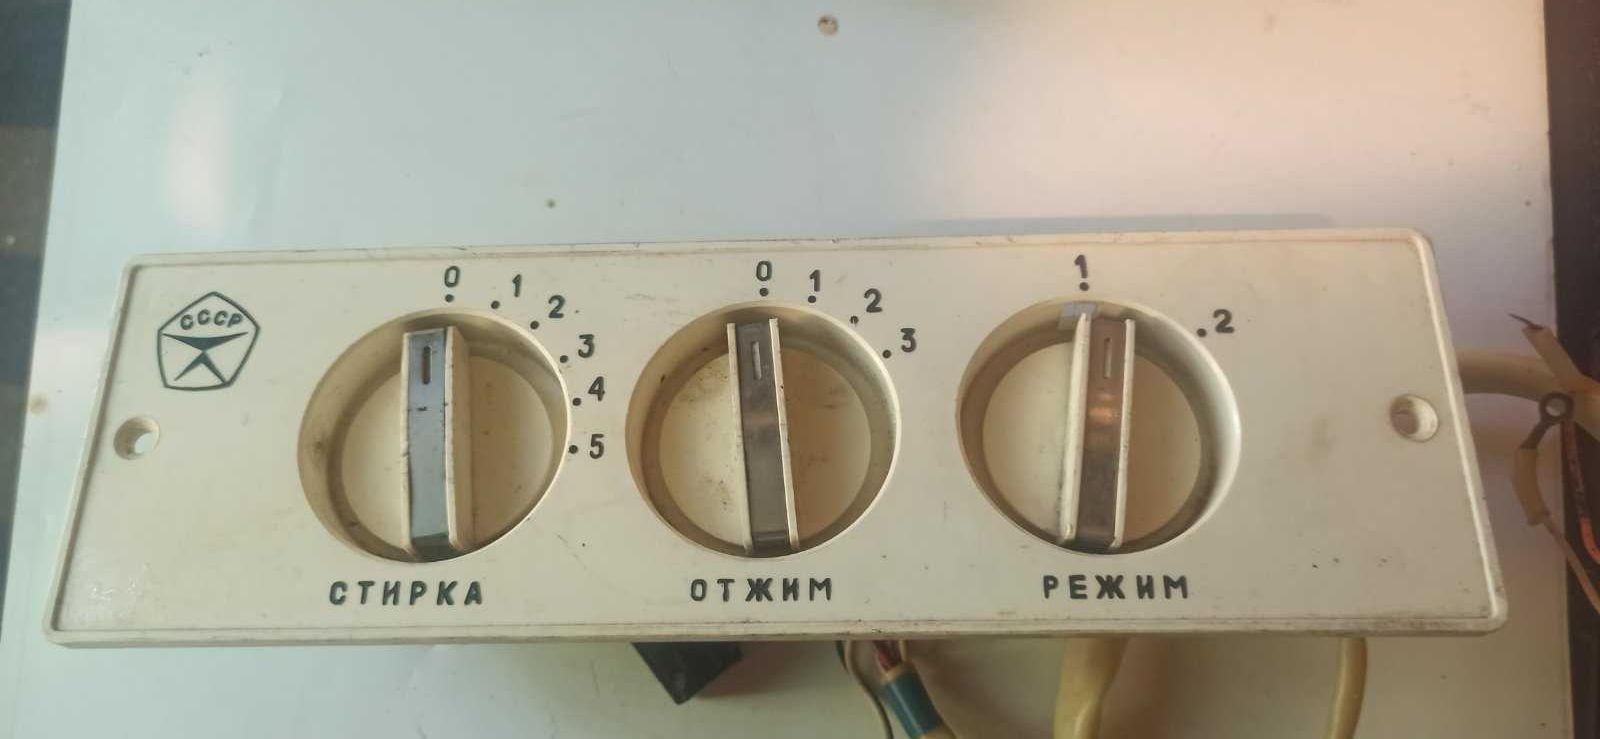 Продам панель управления стиральной машины Сибирь